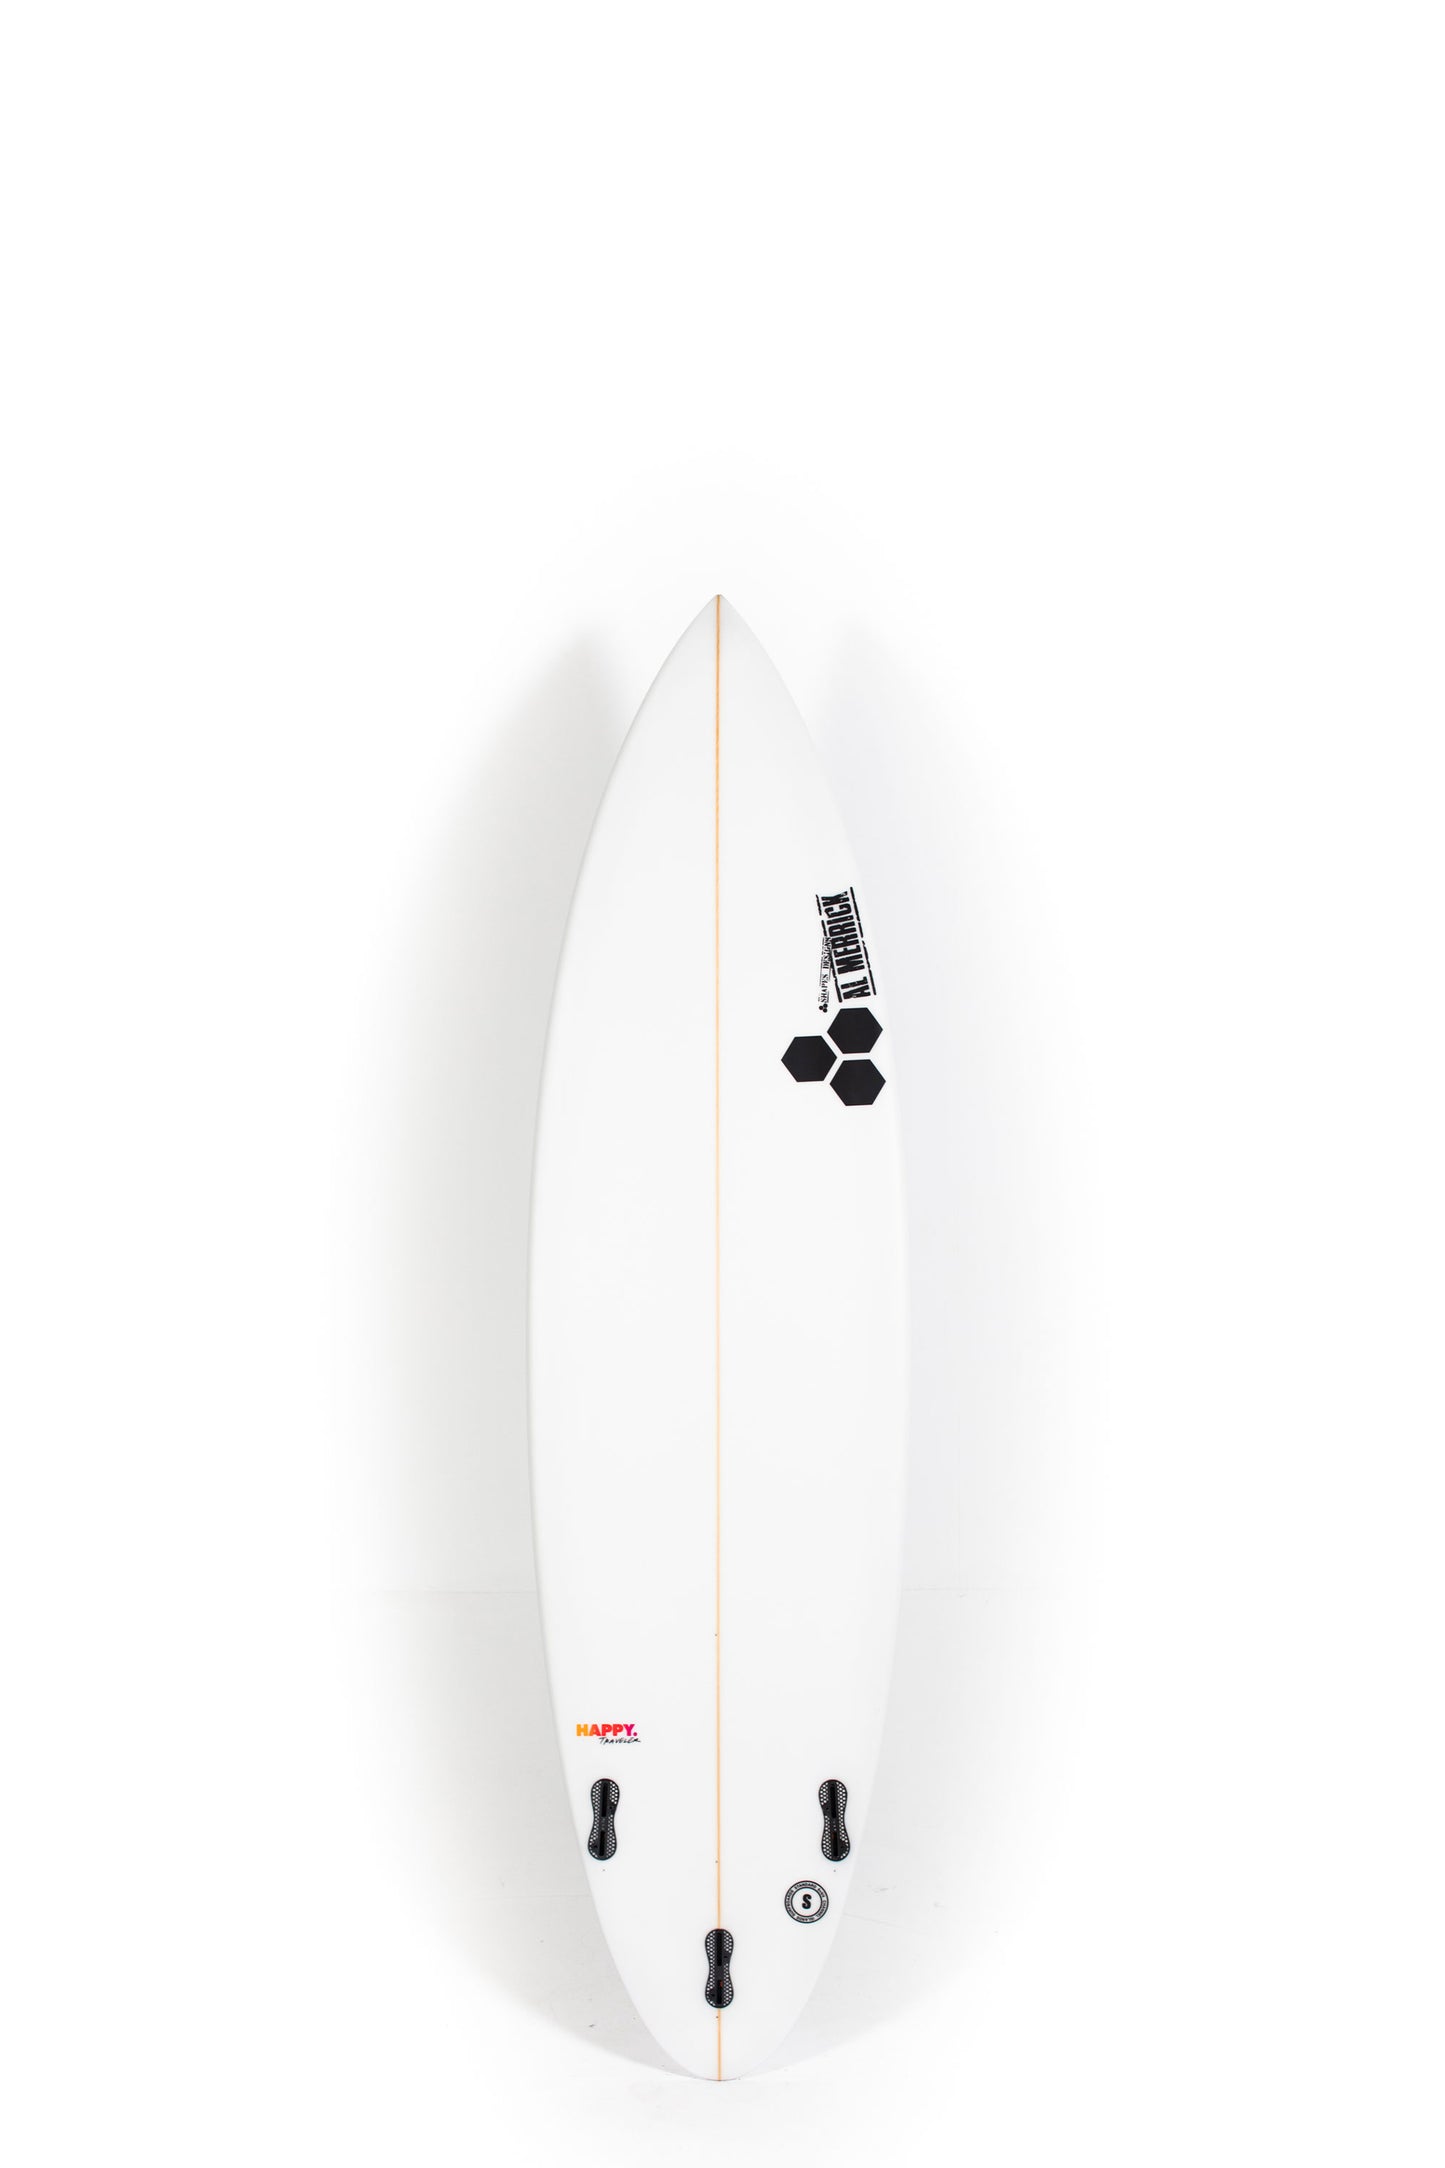 Pukas Surf Shop - Channel Islands - HAPPY TRAVELER by Al Merrick - 6’8” x 20 x 2 3/4 - 38,44L - CI26336